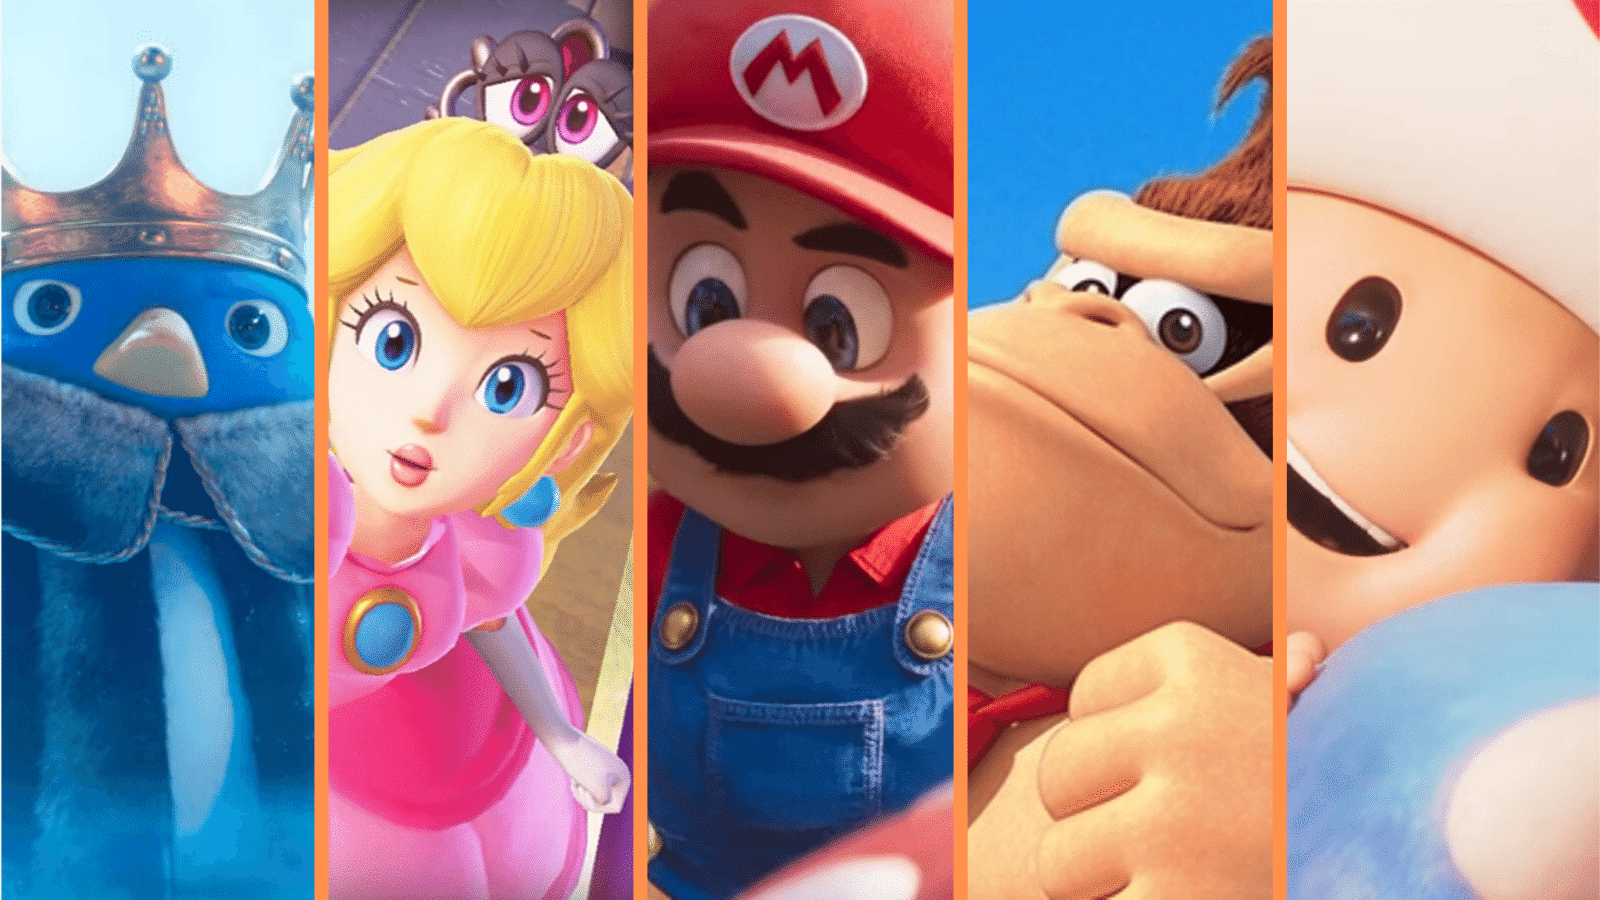 Top 10 Hidden Cameos in The Super Mario Bros. Movie